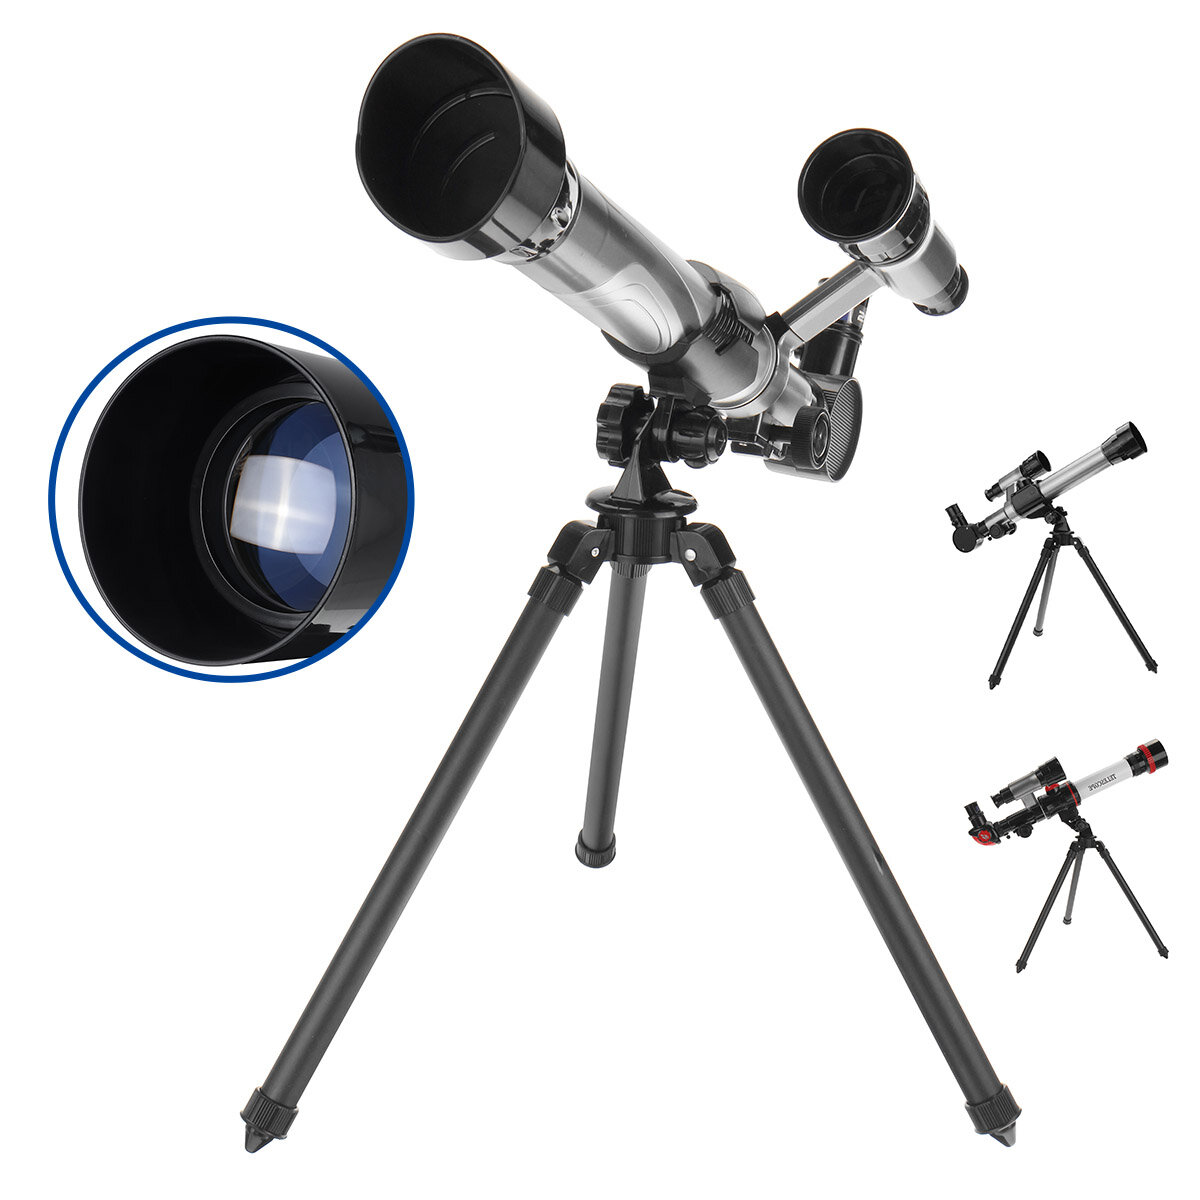 Teleskop reflektorowy optyczny HD 30-40X dla dorosłych, dzieci i początkujących z trójnogiem